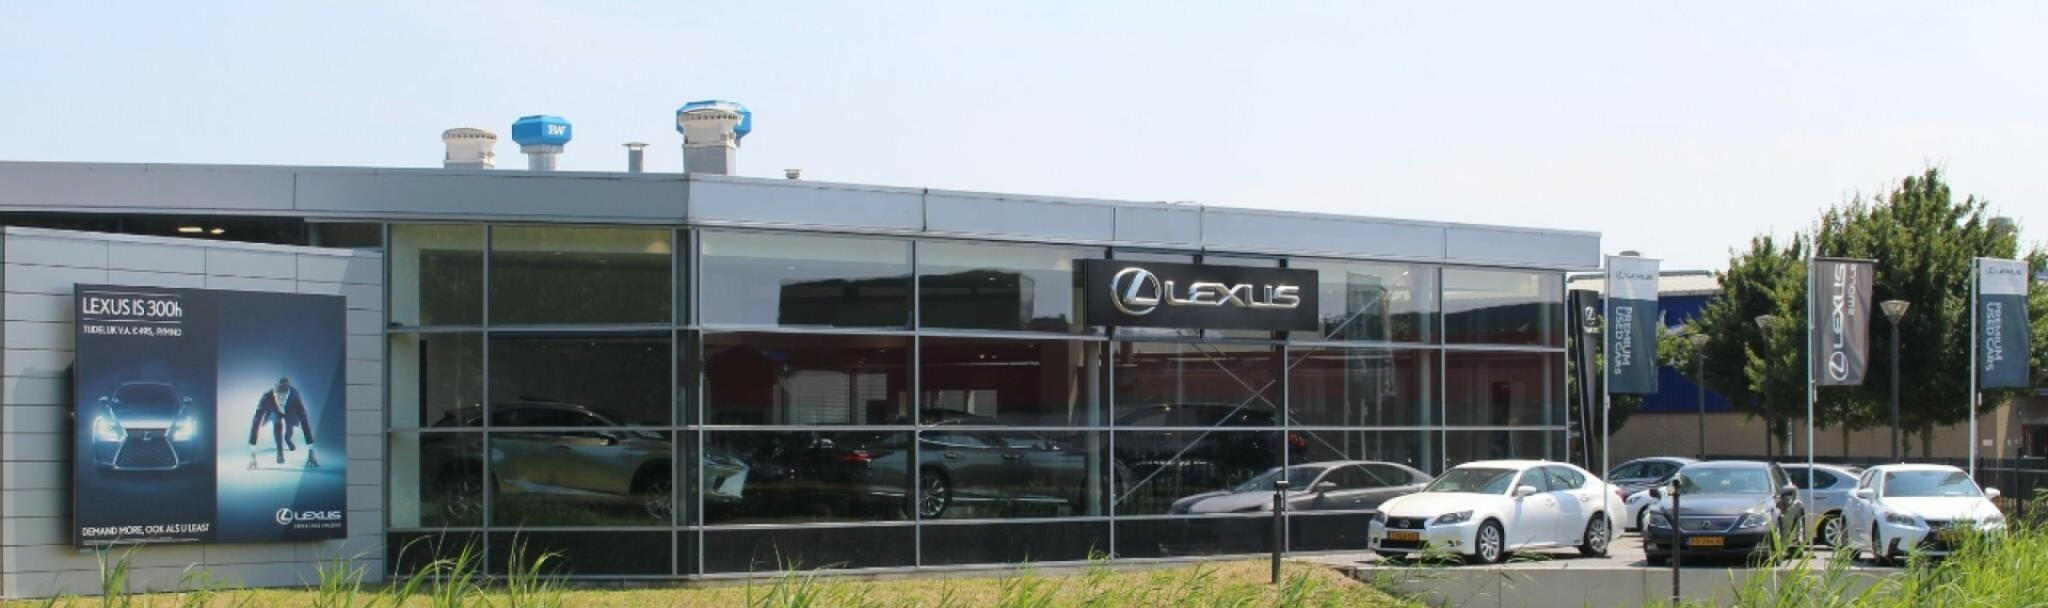 Lexus-CT-29